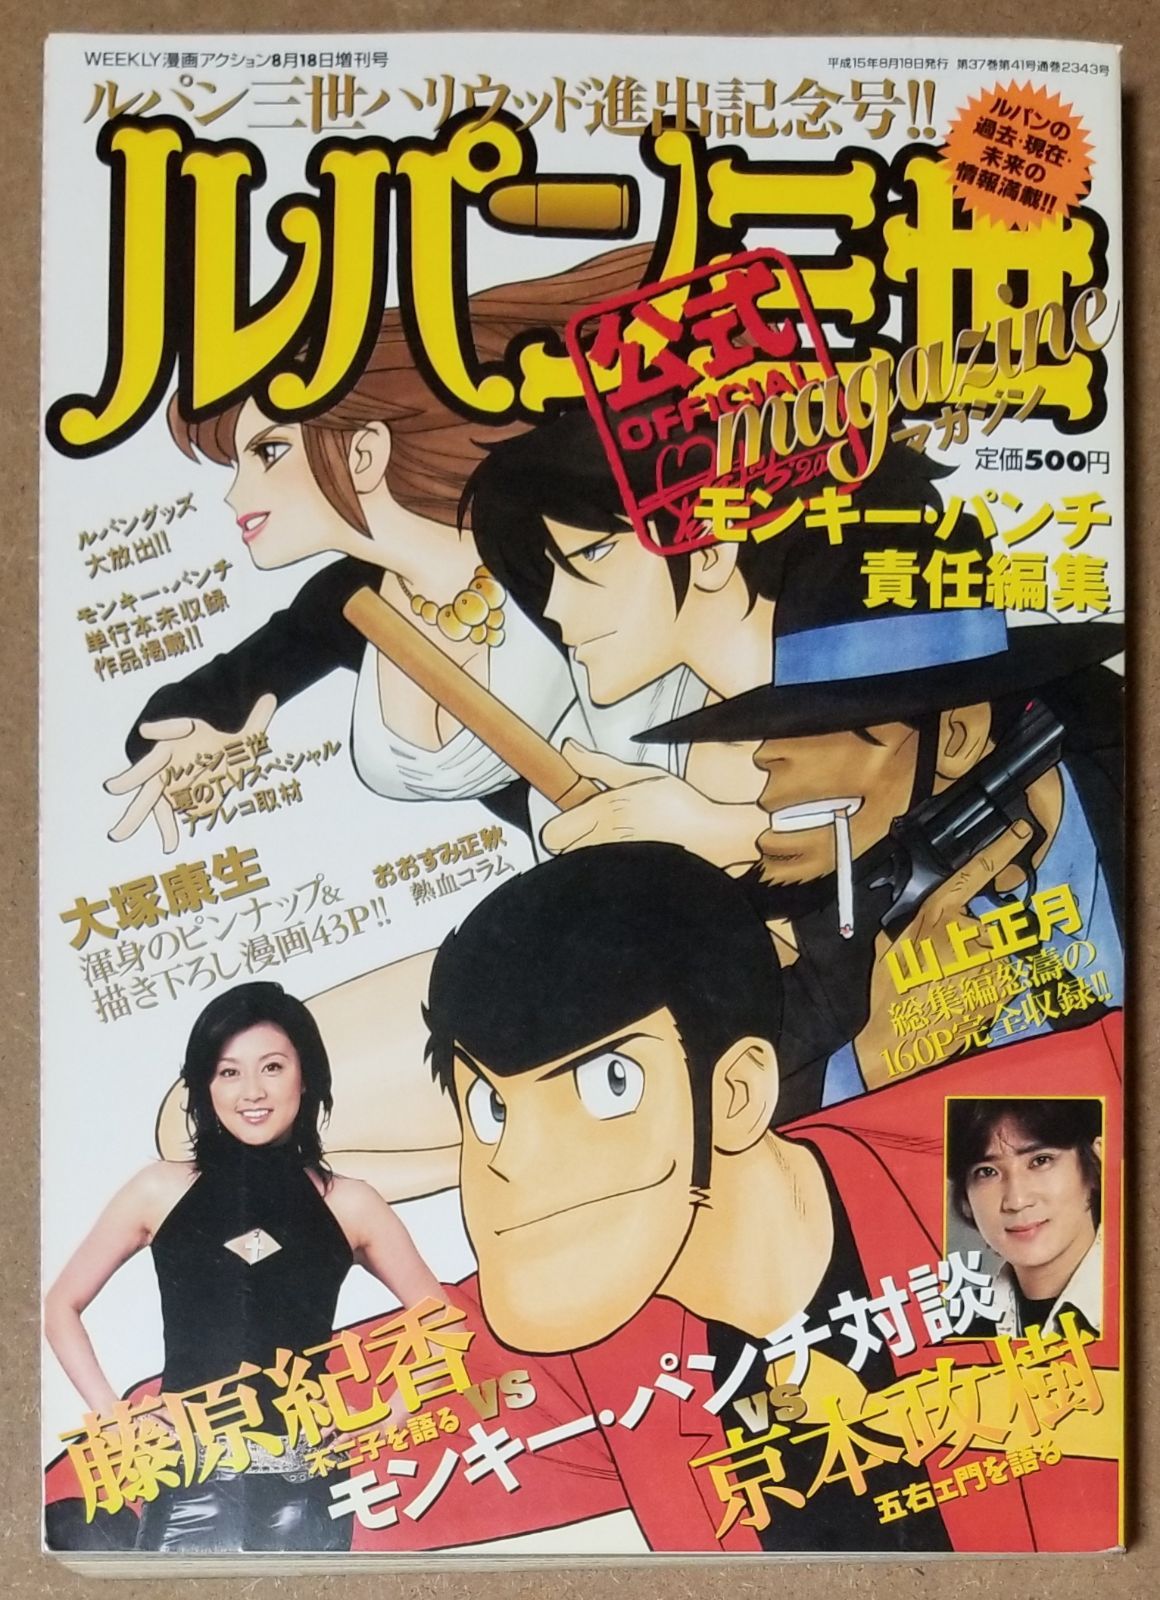 ルパン三世 公式magazine Weekly漫画アクション8月18日増刊号 - メルカリ